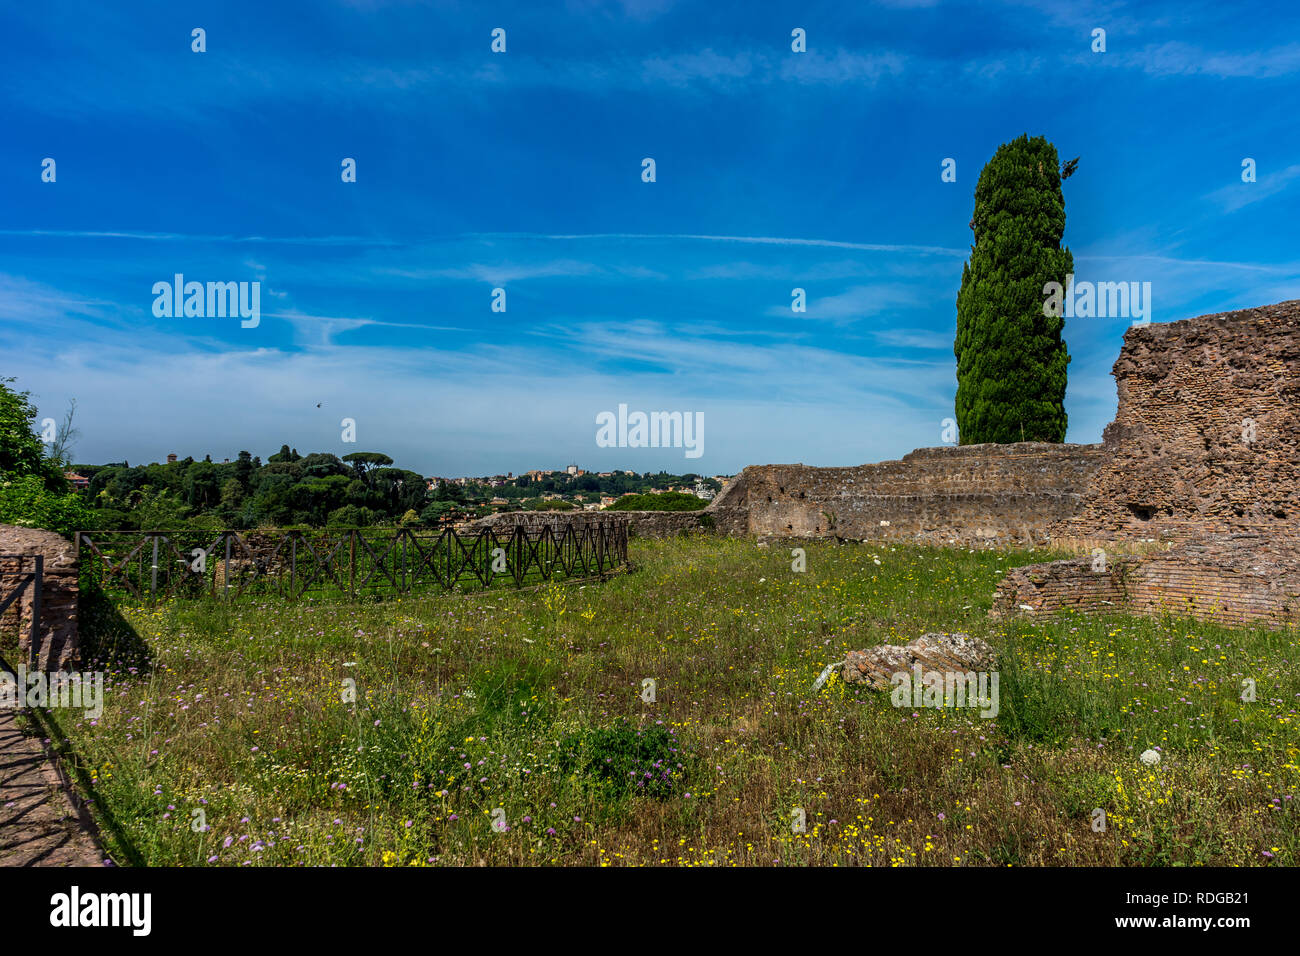 Europa, Italien, Rom, Forum Romanum, eine große grüne Wiese mit Bäumen im Hintergrund Stockfoto